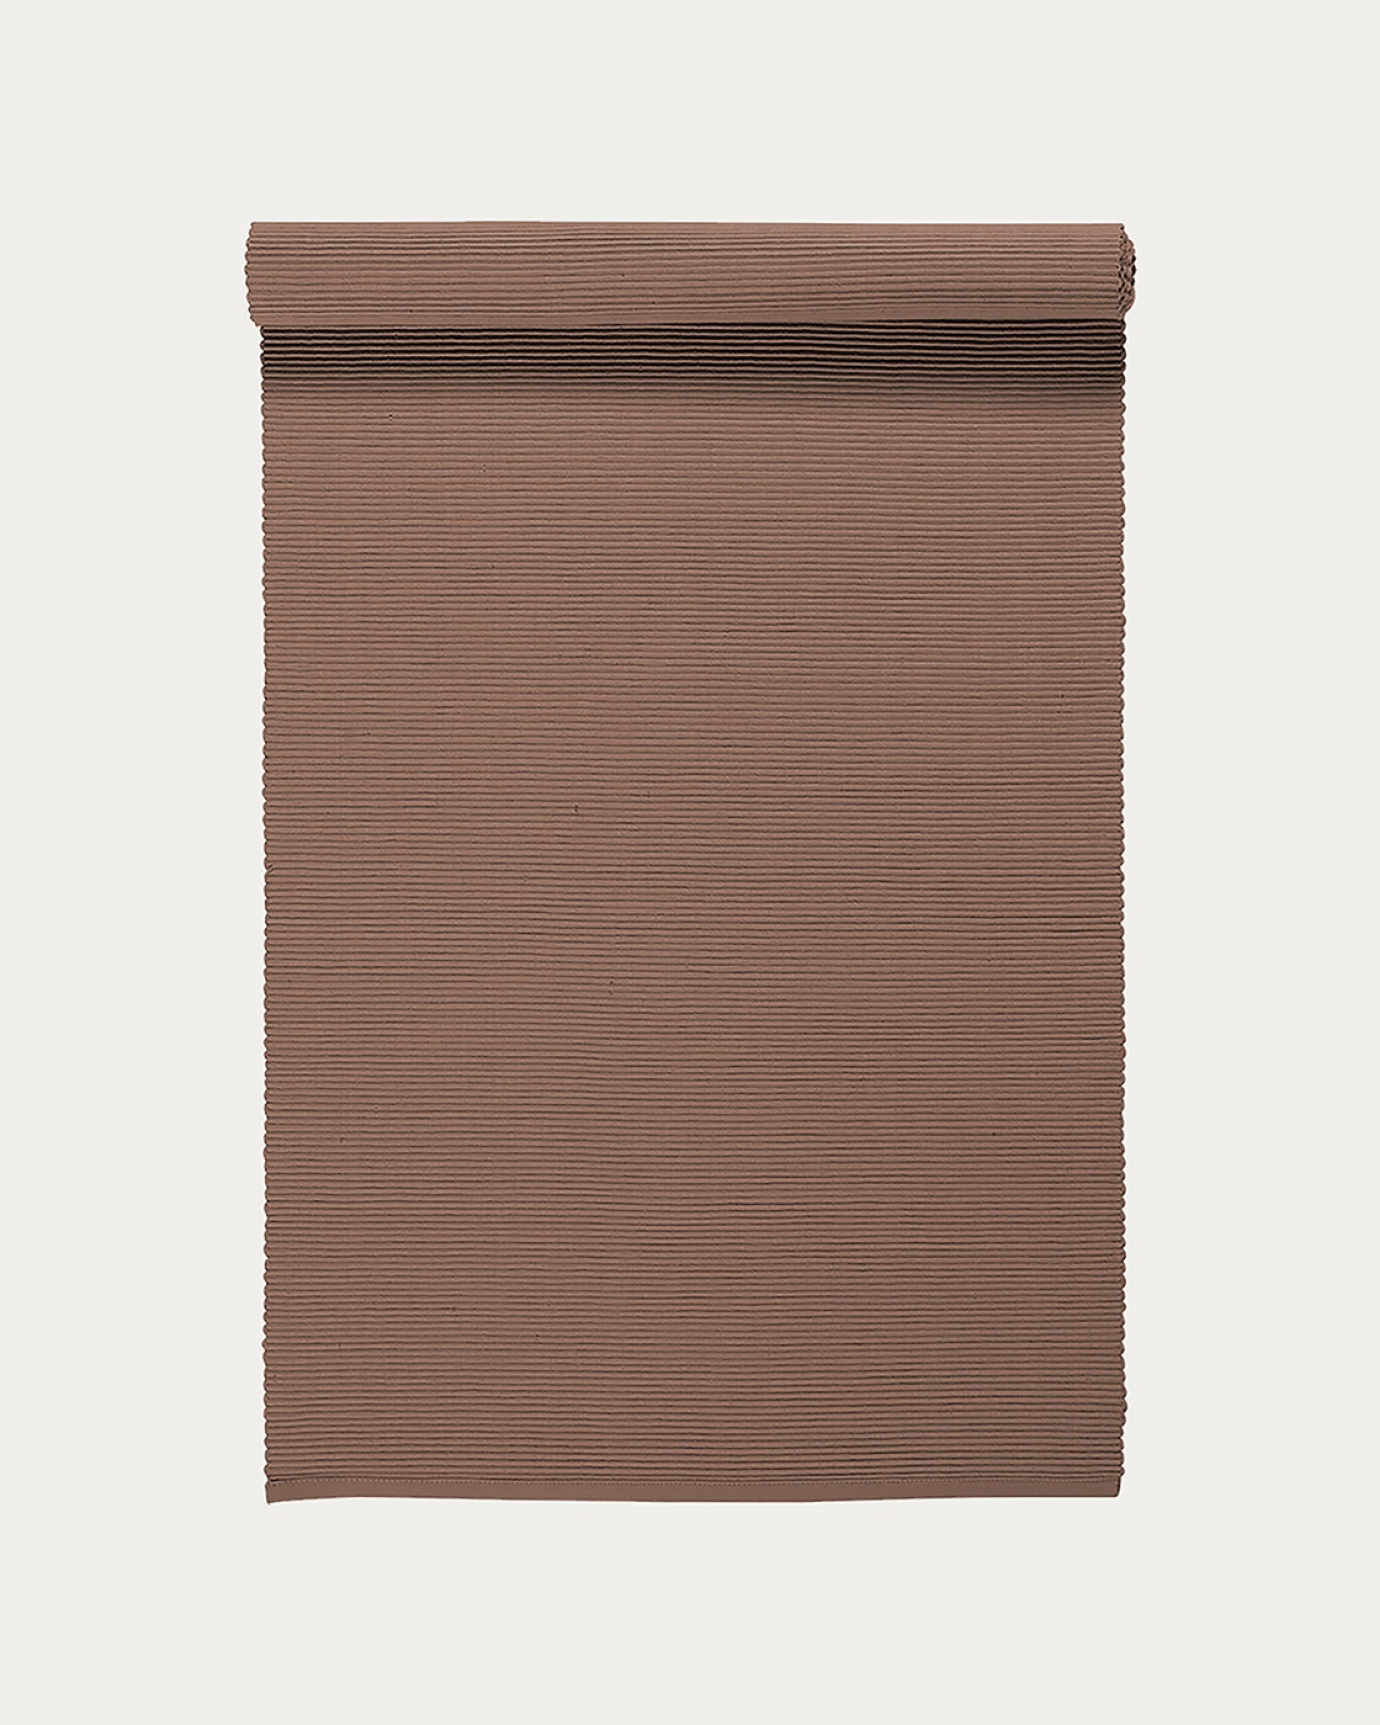 Image du produit chemin de table UNI taupe foncé en coton doux de qualité côtelée de LINUM DESIGN. Taille 45 x 150 cm.